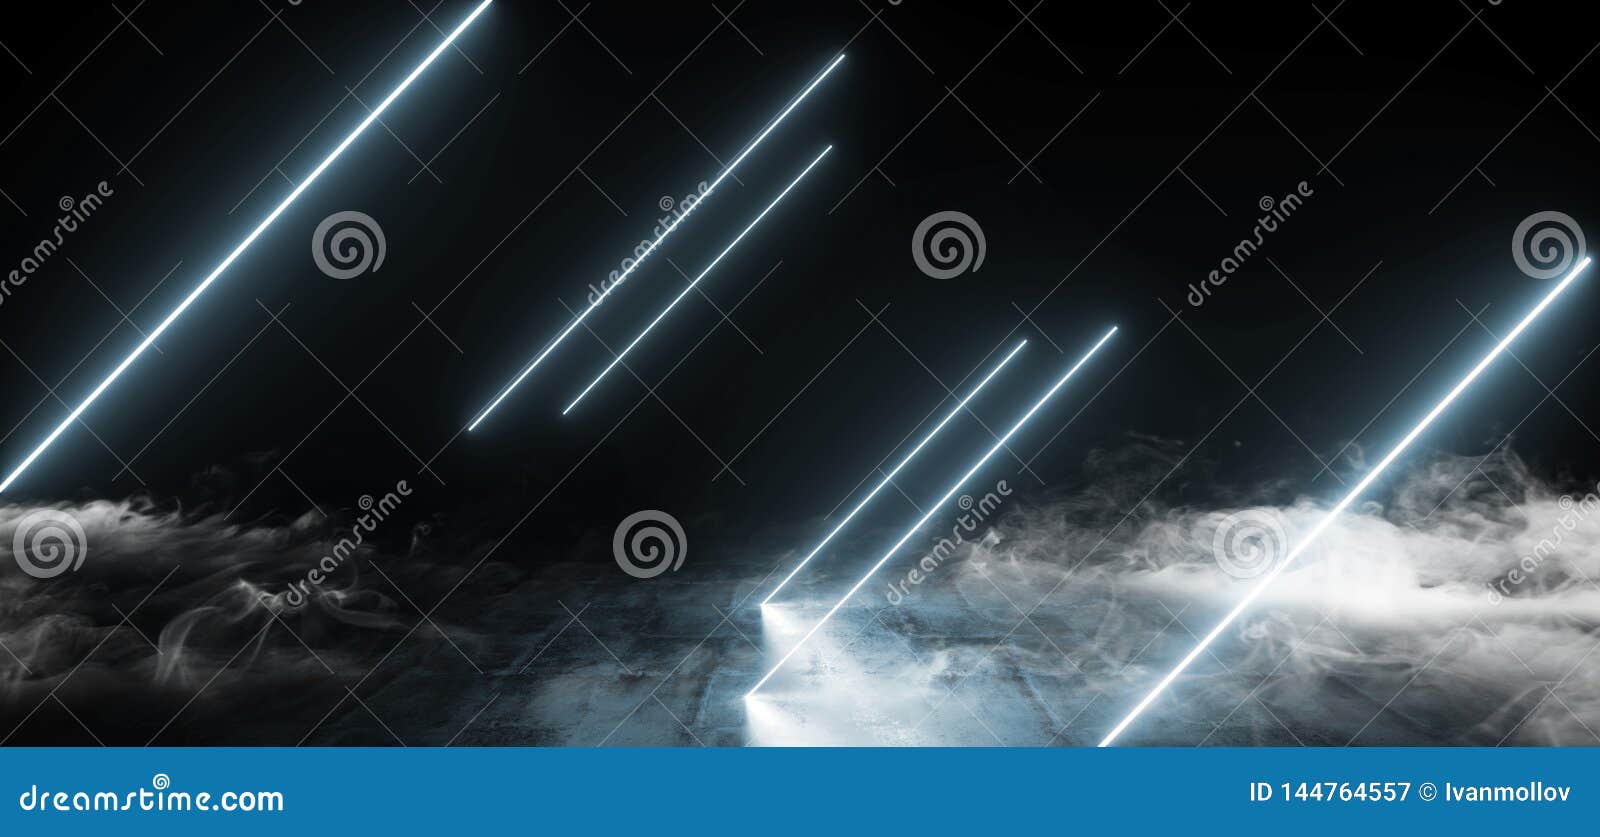 典雅的线掀动形状的霓虹萤光减速火箭的激光的烟带领了在地下霍尔的展示阶段充满活力的蓝色发库存例证